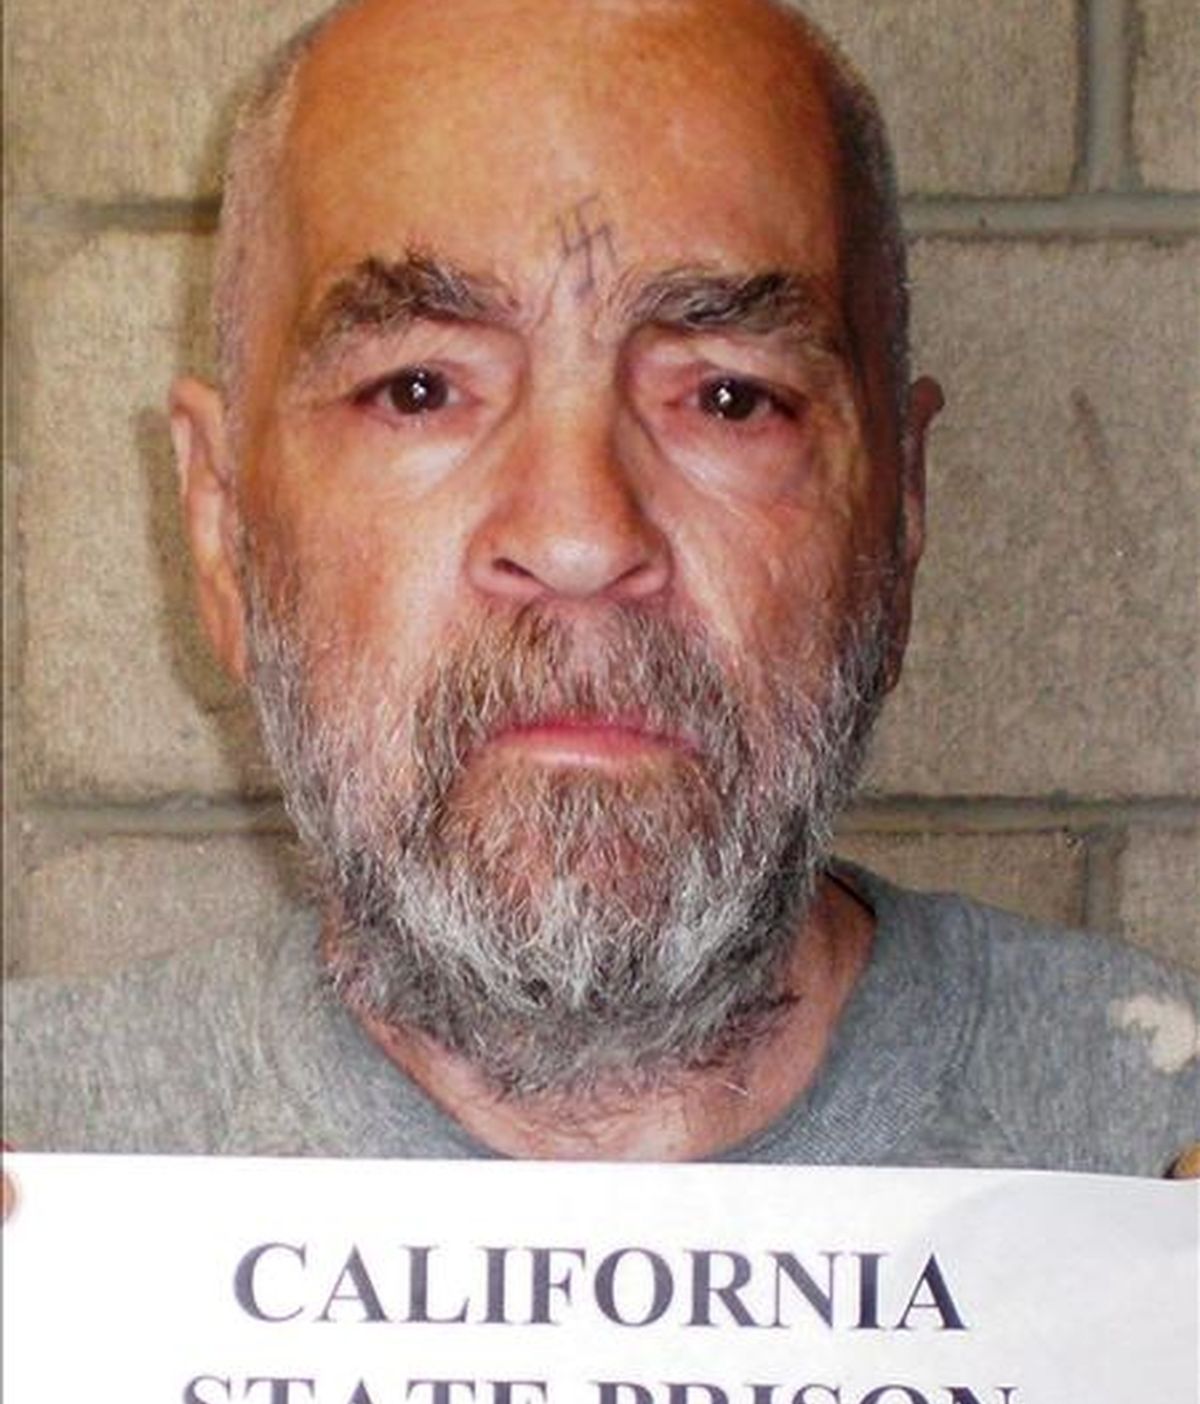 Fotografía cedida por la Prisión Estatal de California el 18 de marzo de este año del presidiario asesino Charles Manson, de 74 años. Manson cumple cadena perpetua por el asesinato de siete personas la noche del 8 al 9 de agosto de 1969. EFE/Prisión Estatal de California